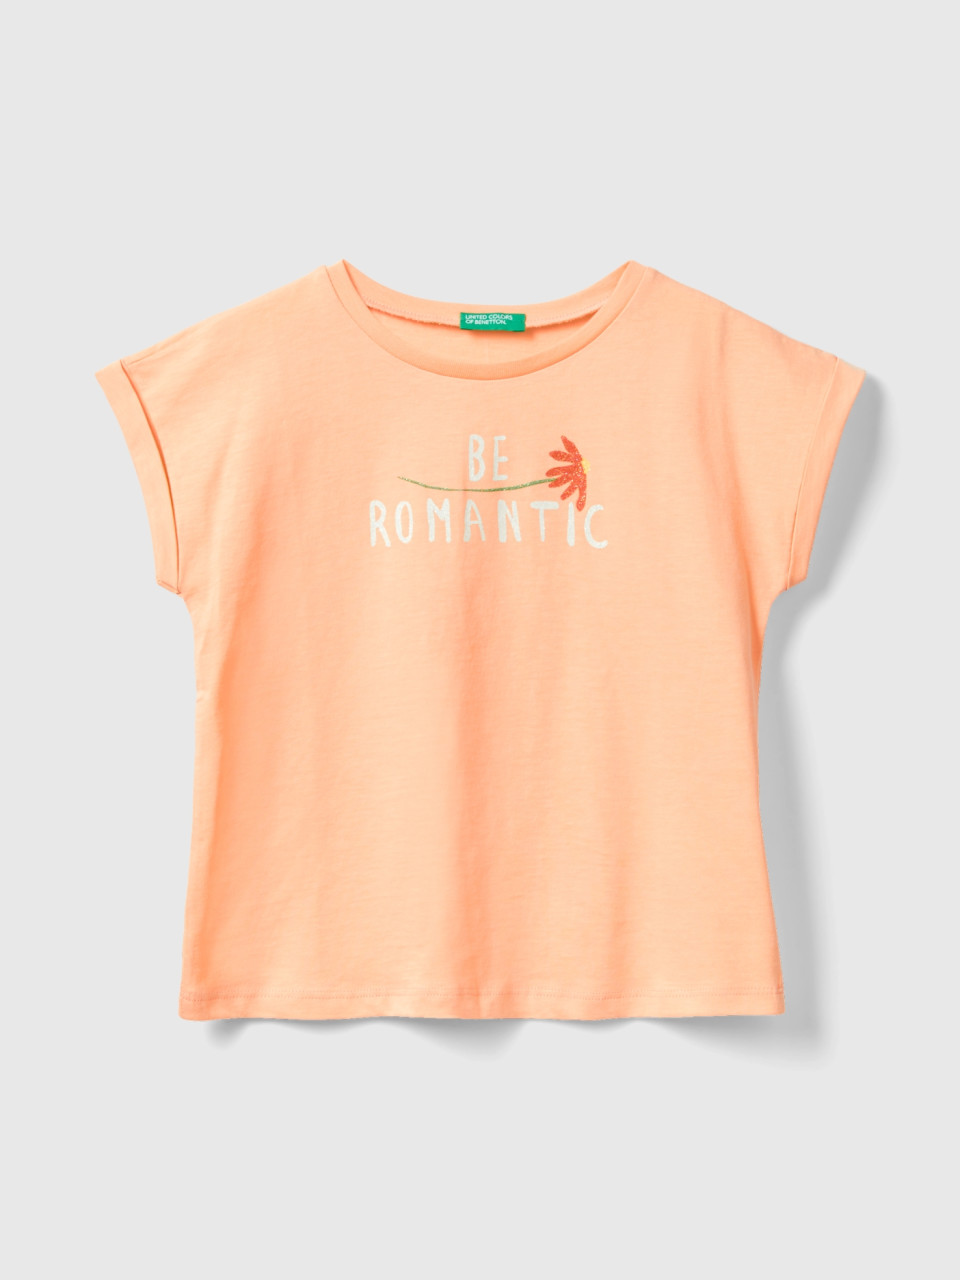 Benetton, Camiseta Regular Fit De Algodón Orgánico, Salmón, Niños